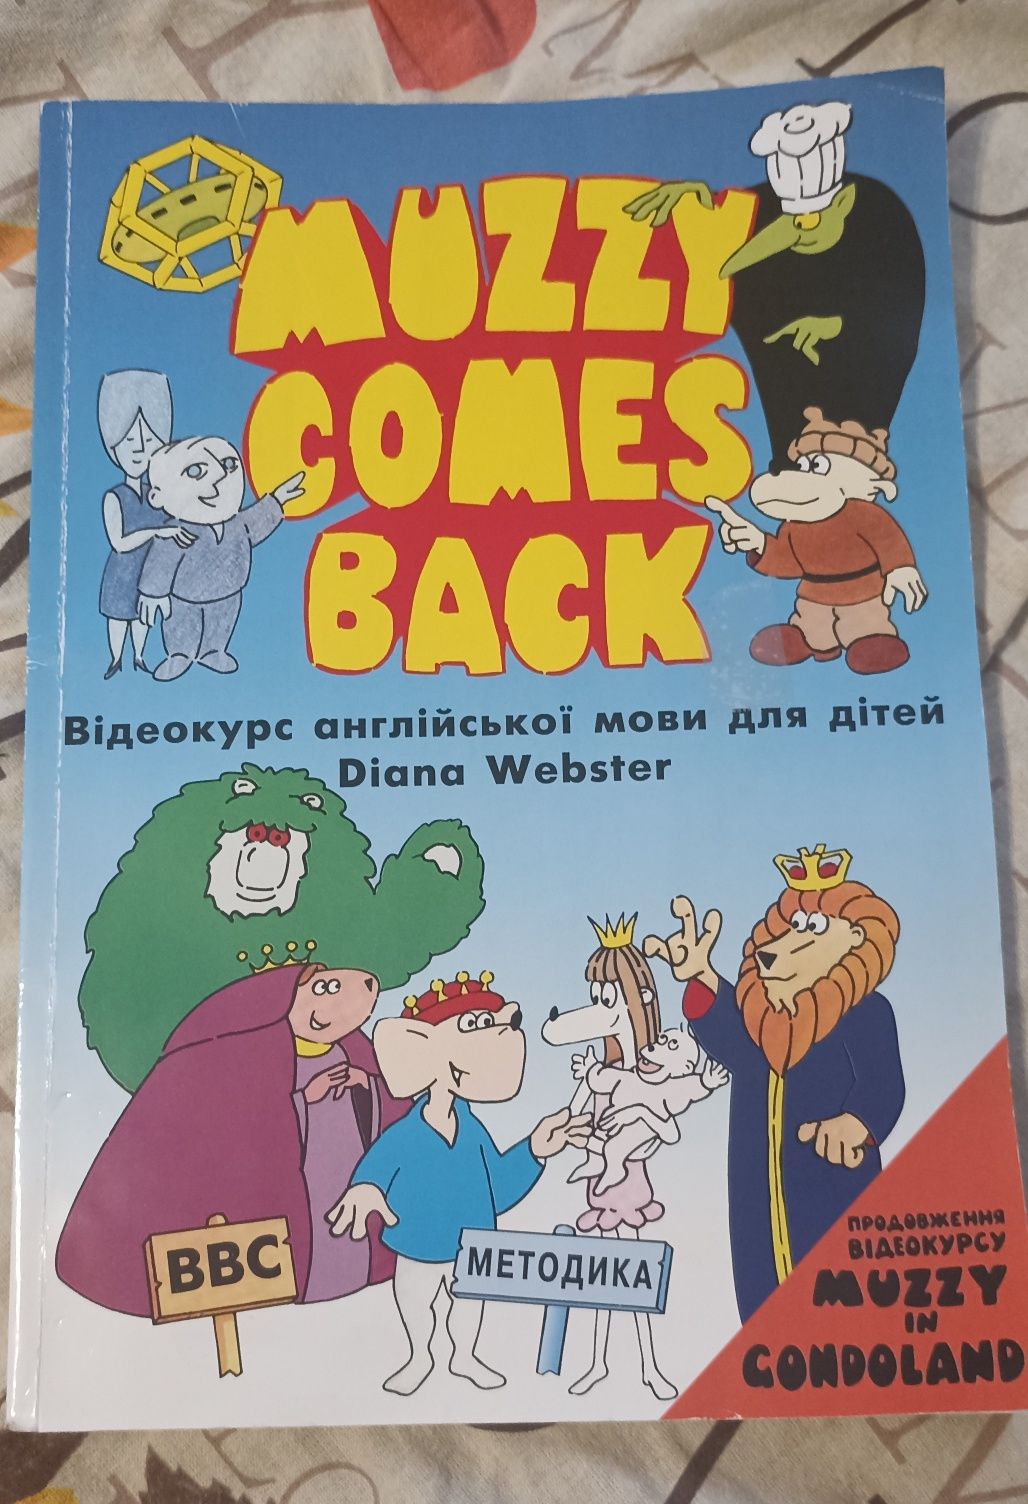 Учебник английского muzzy comes back: відеокурс англійської мови